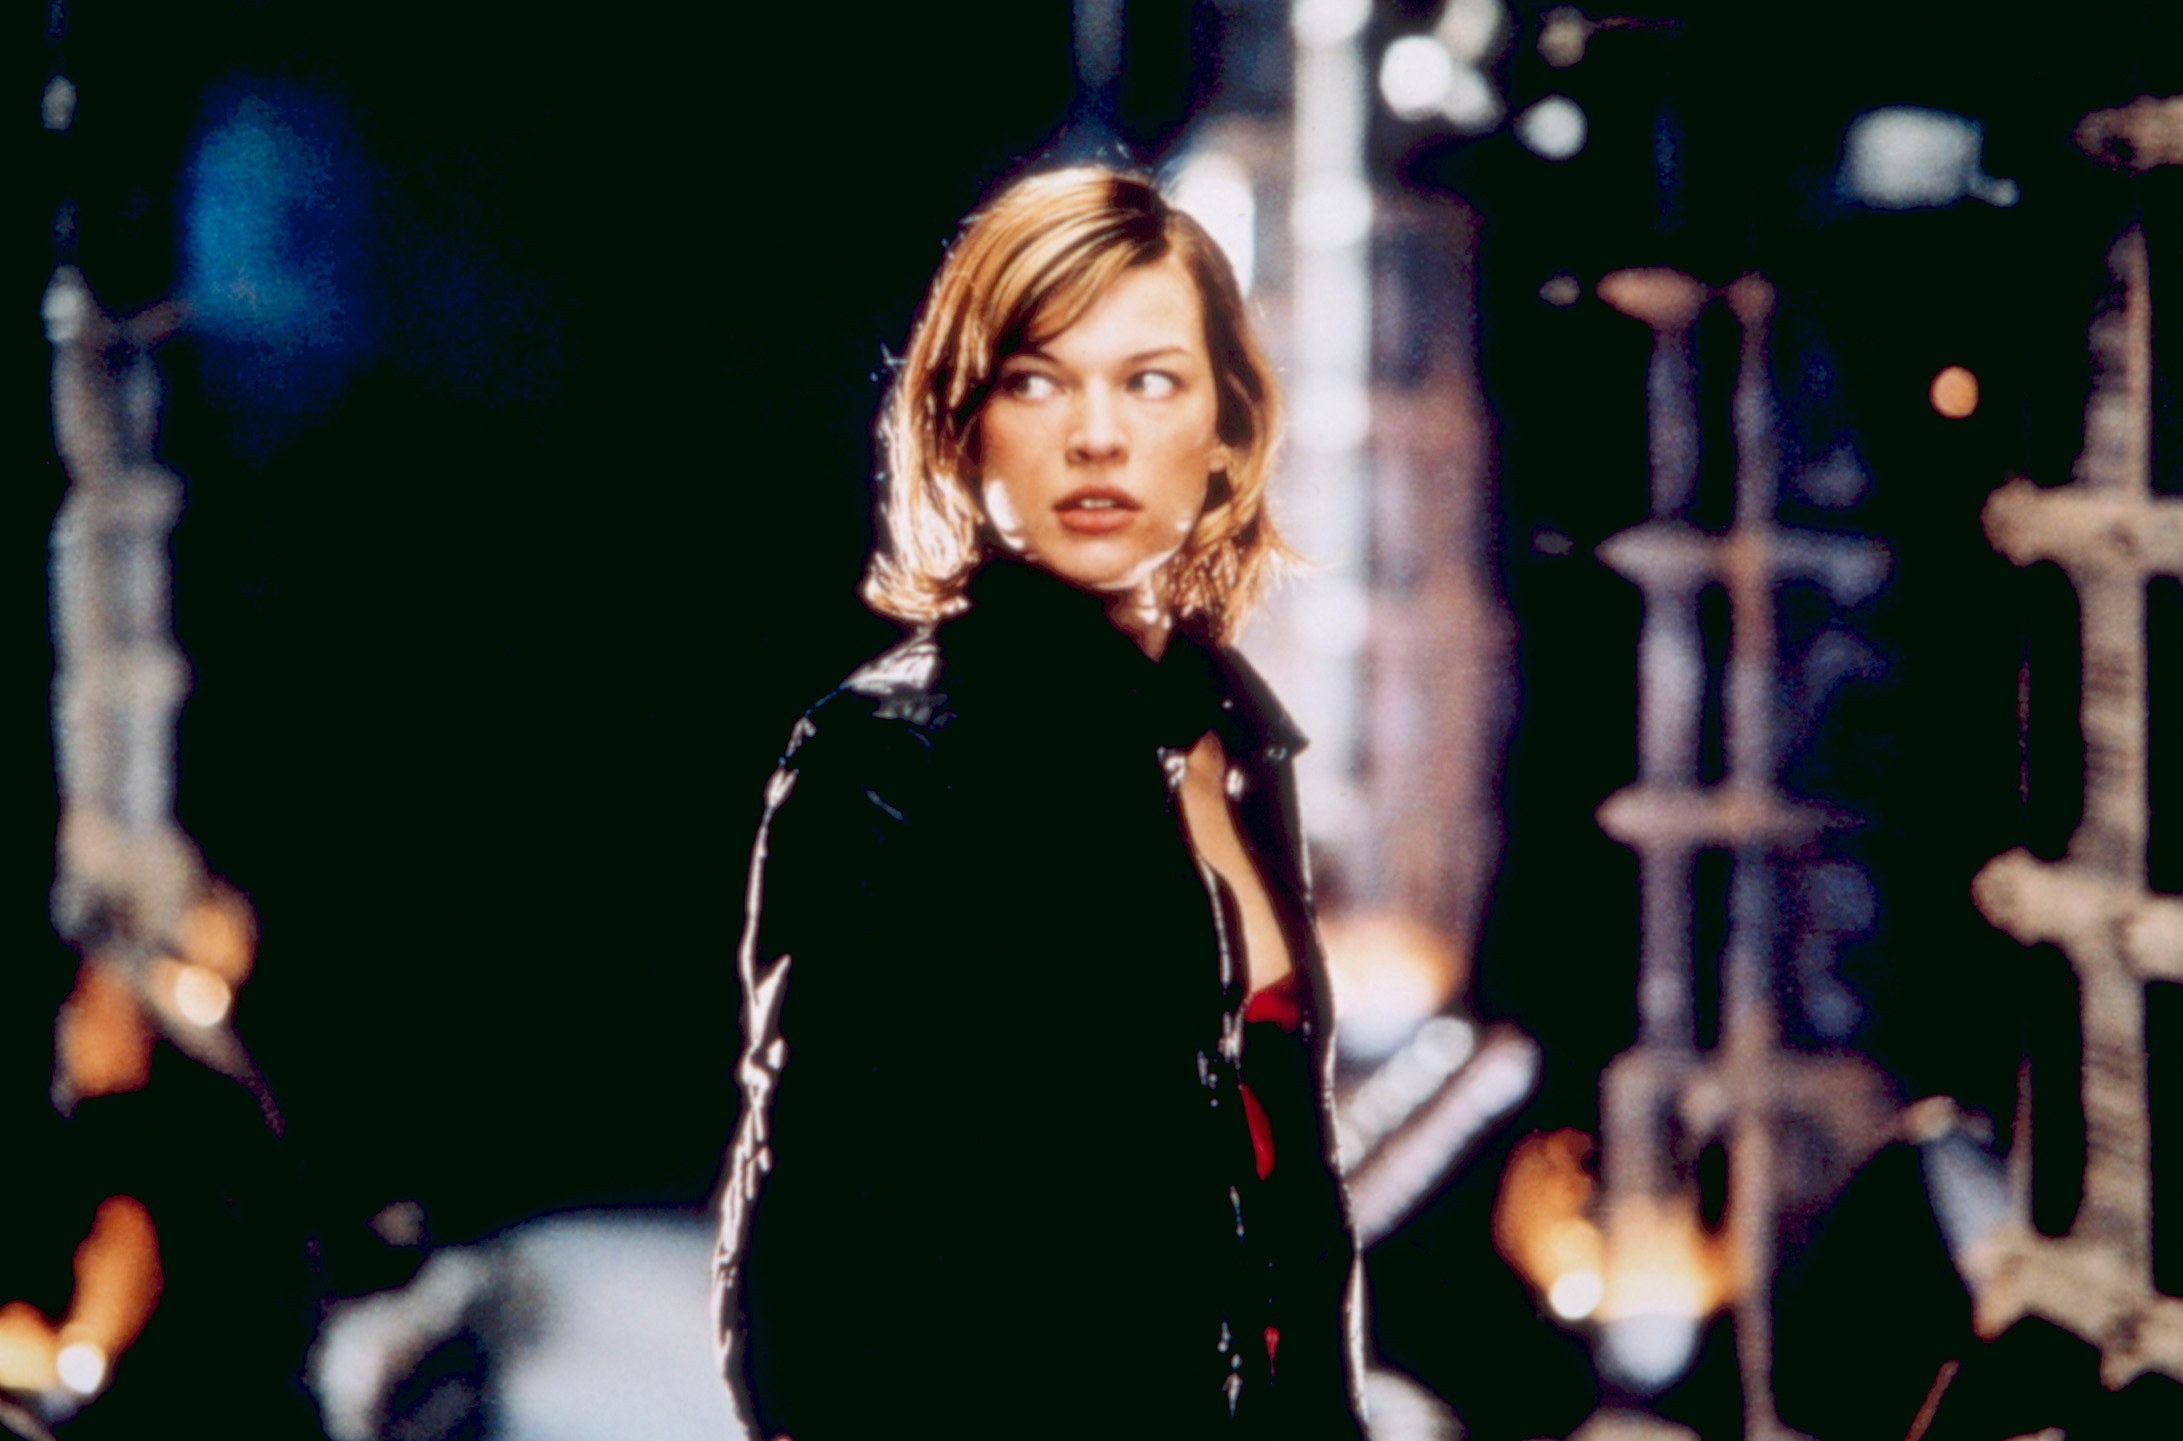 Milla Jovovich in Resident Evil